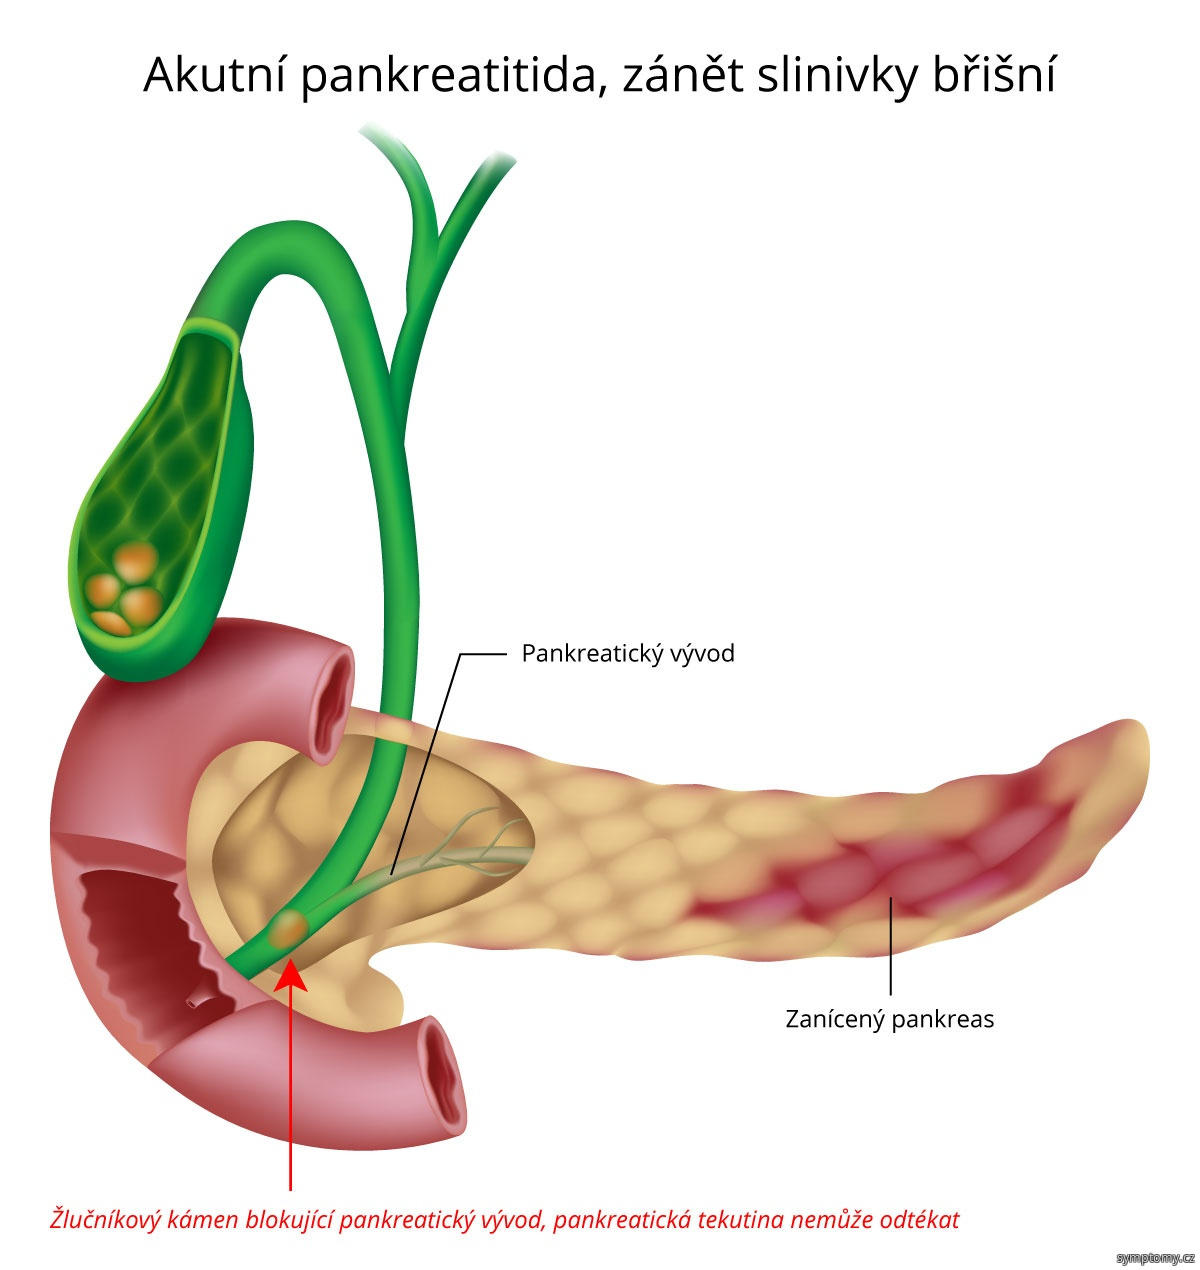 Akutní pankreatitida - zánět slinivky břišní